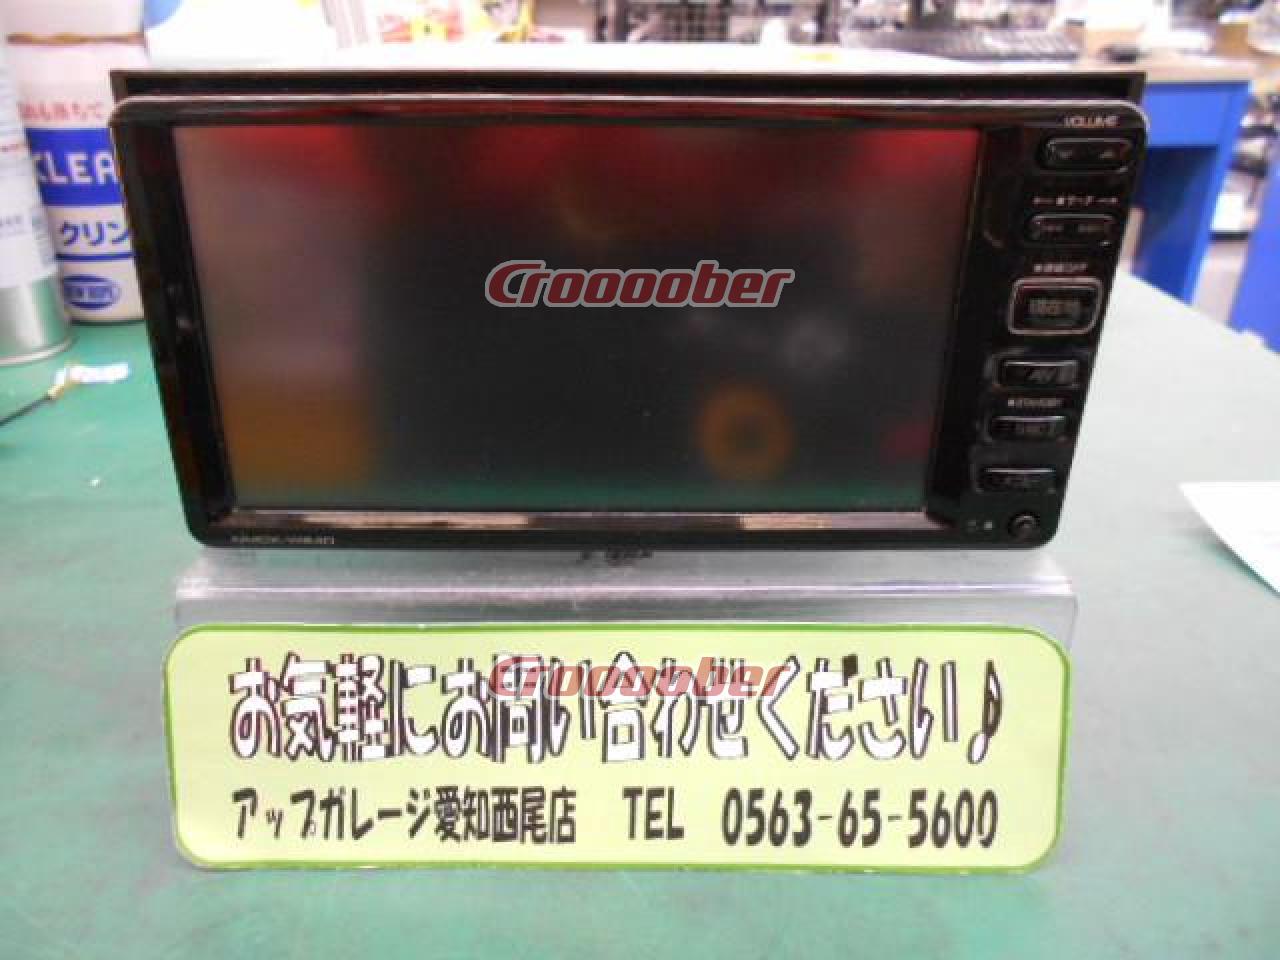 ダイハツ純正(KENWOOD製) NMCK-W64D 2013年モデル ワンセグ/CD/USB/SD 